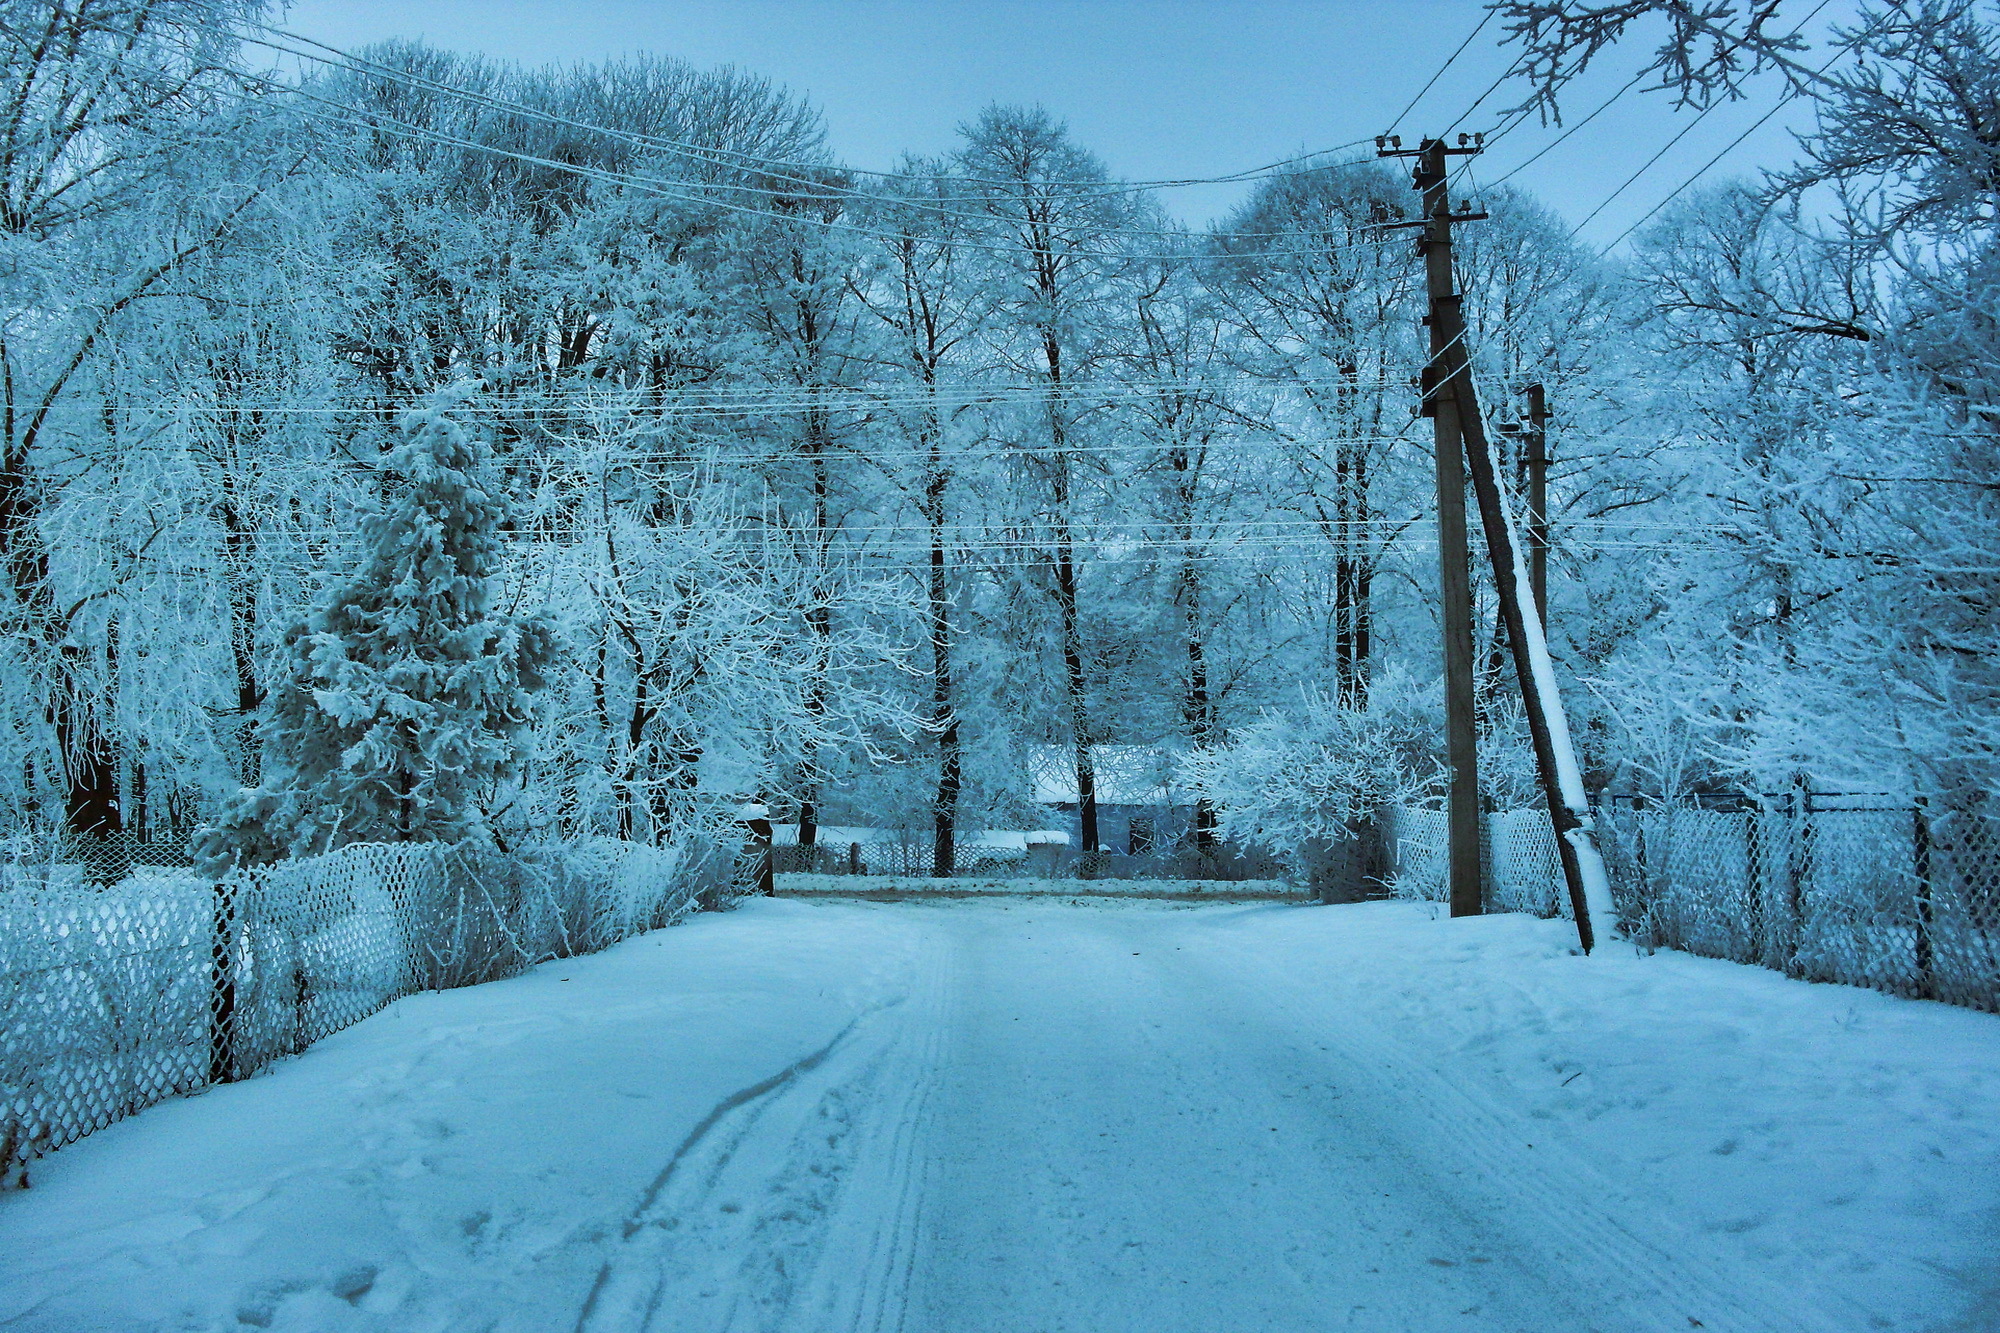 Скачать картинку Зима, Снег, Дорога, Дерево, Фотографии в телефон бесплатно.